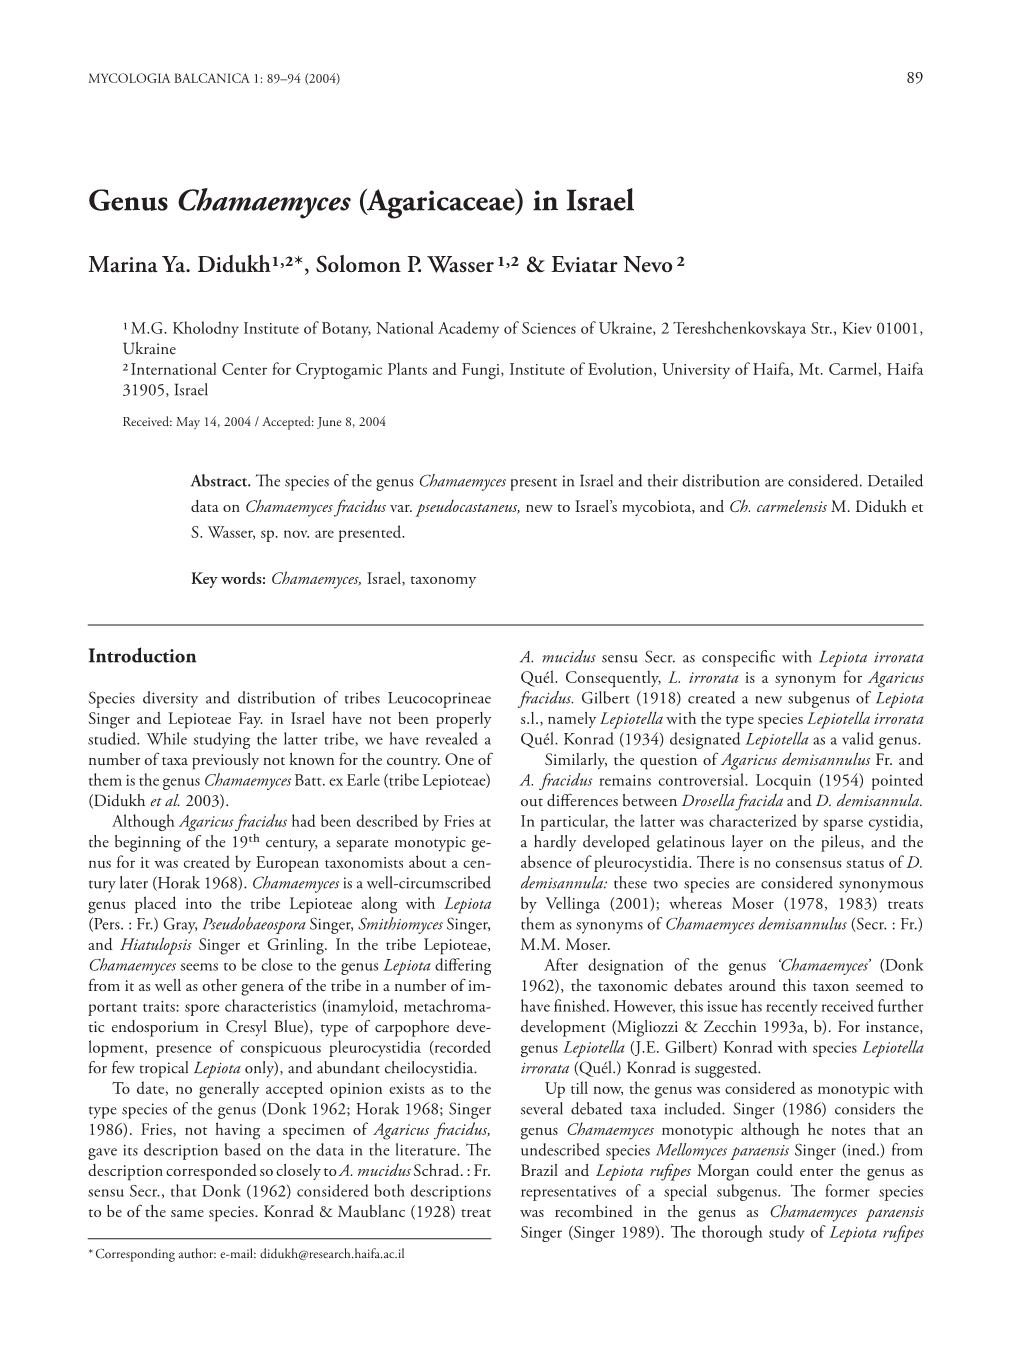 Genus Chamaemyces (Agaricaceae) in Israel